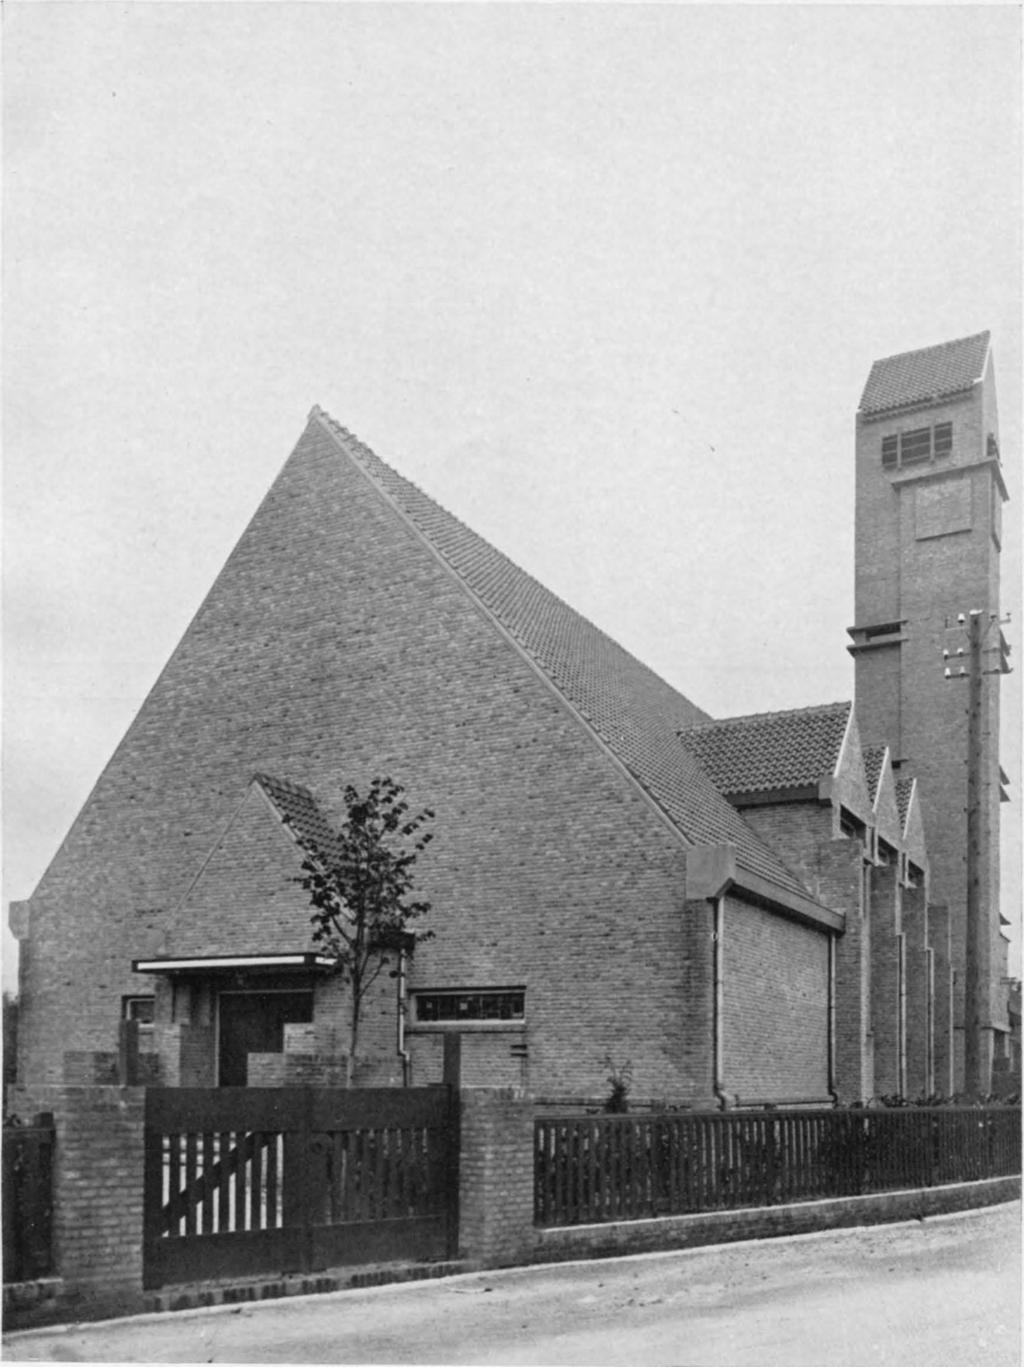 34. Jan Wils 1922, Nieuw Lekkertand. p.